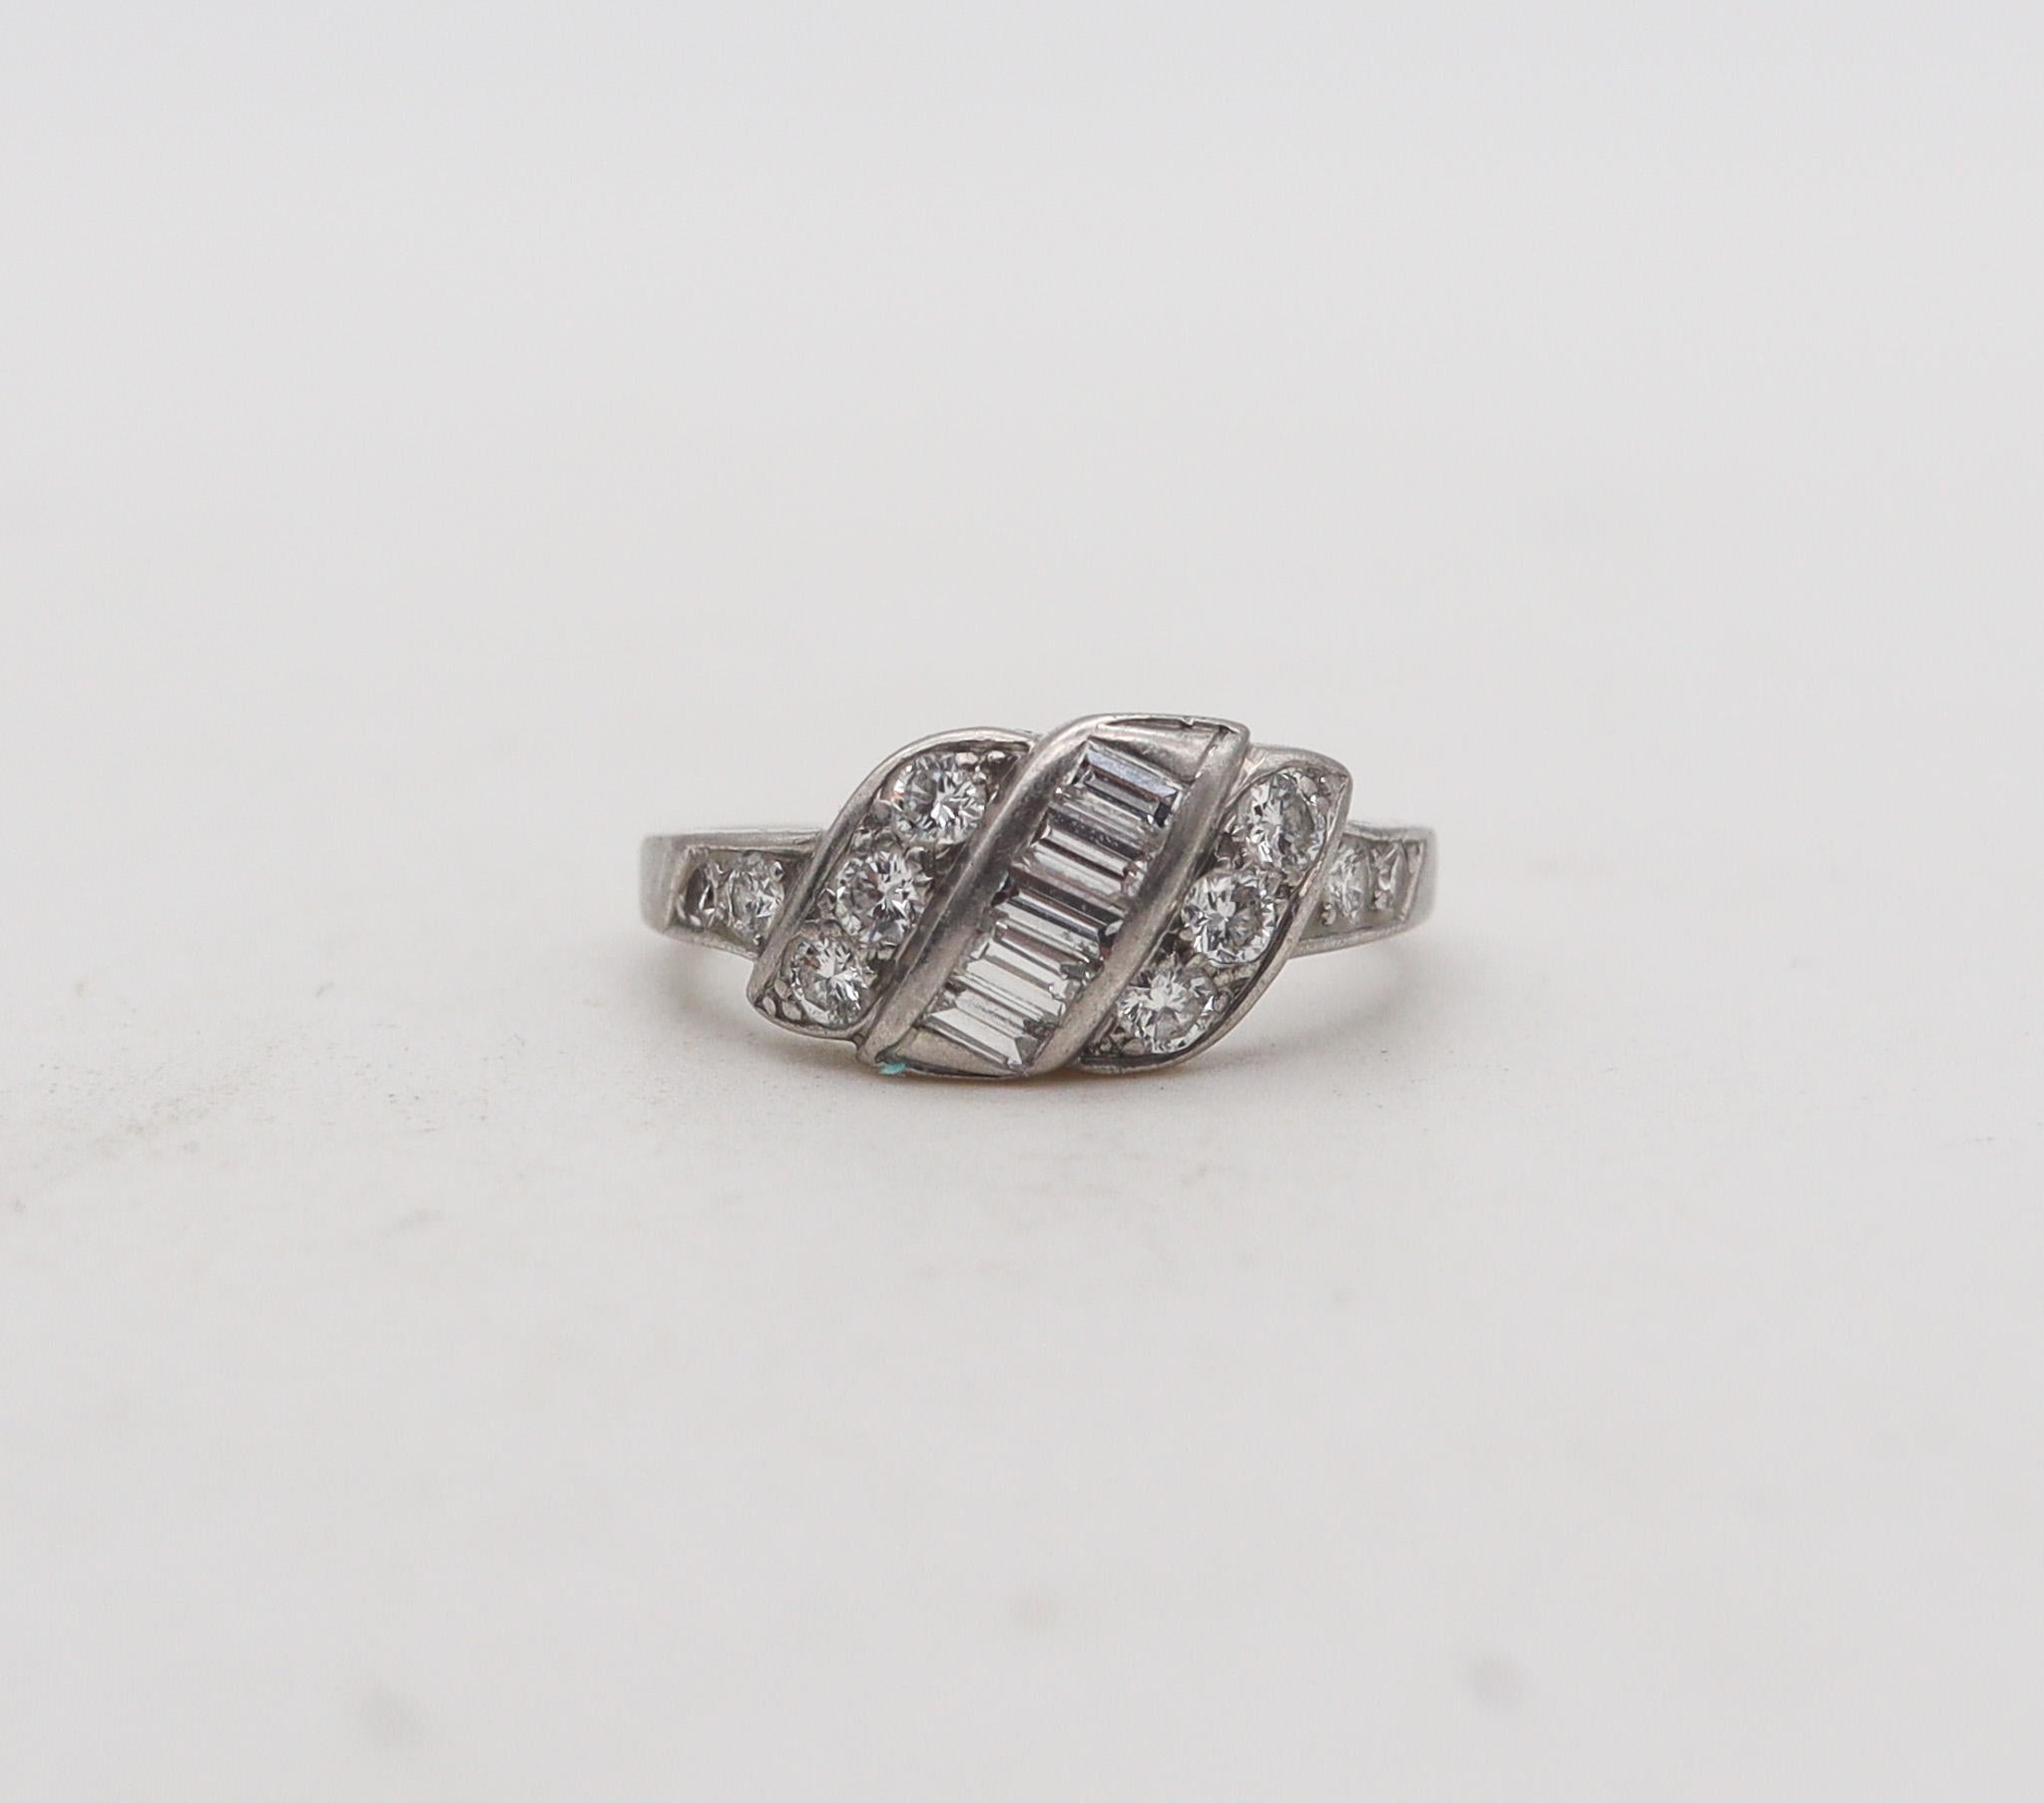 Ein Art-Deco-Ring mit Diamanten, entworfen von J. L. Hartzberg & Co.

Schöner Bandring aus der Zeit des Art Déco aus dem Schmuckatelier von J.L. Hartzberg & Co. in den 1930er Jahren. Dieser Ring wurde mit klassischen Deco-Mustern in massivem Platin